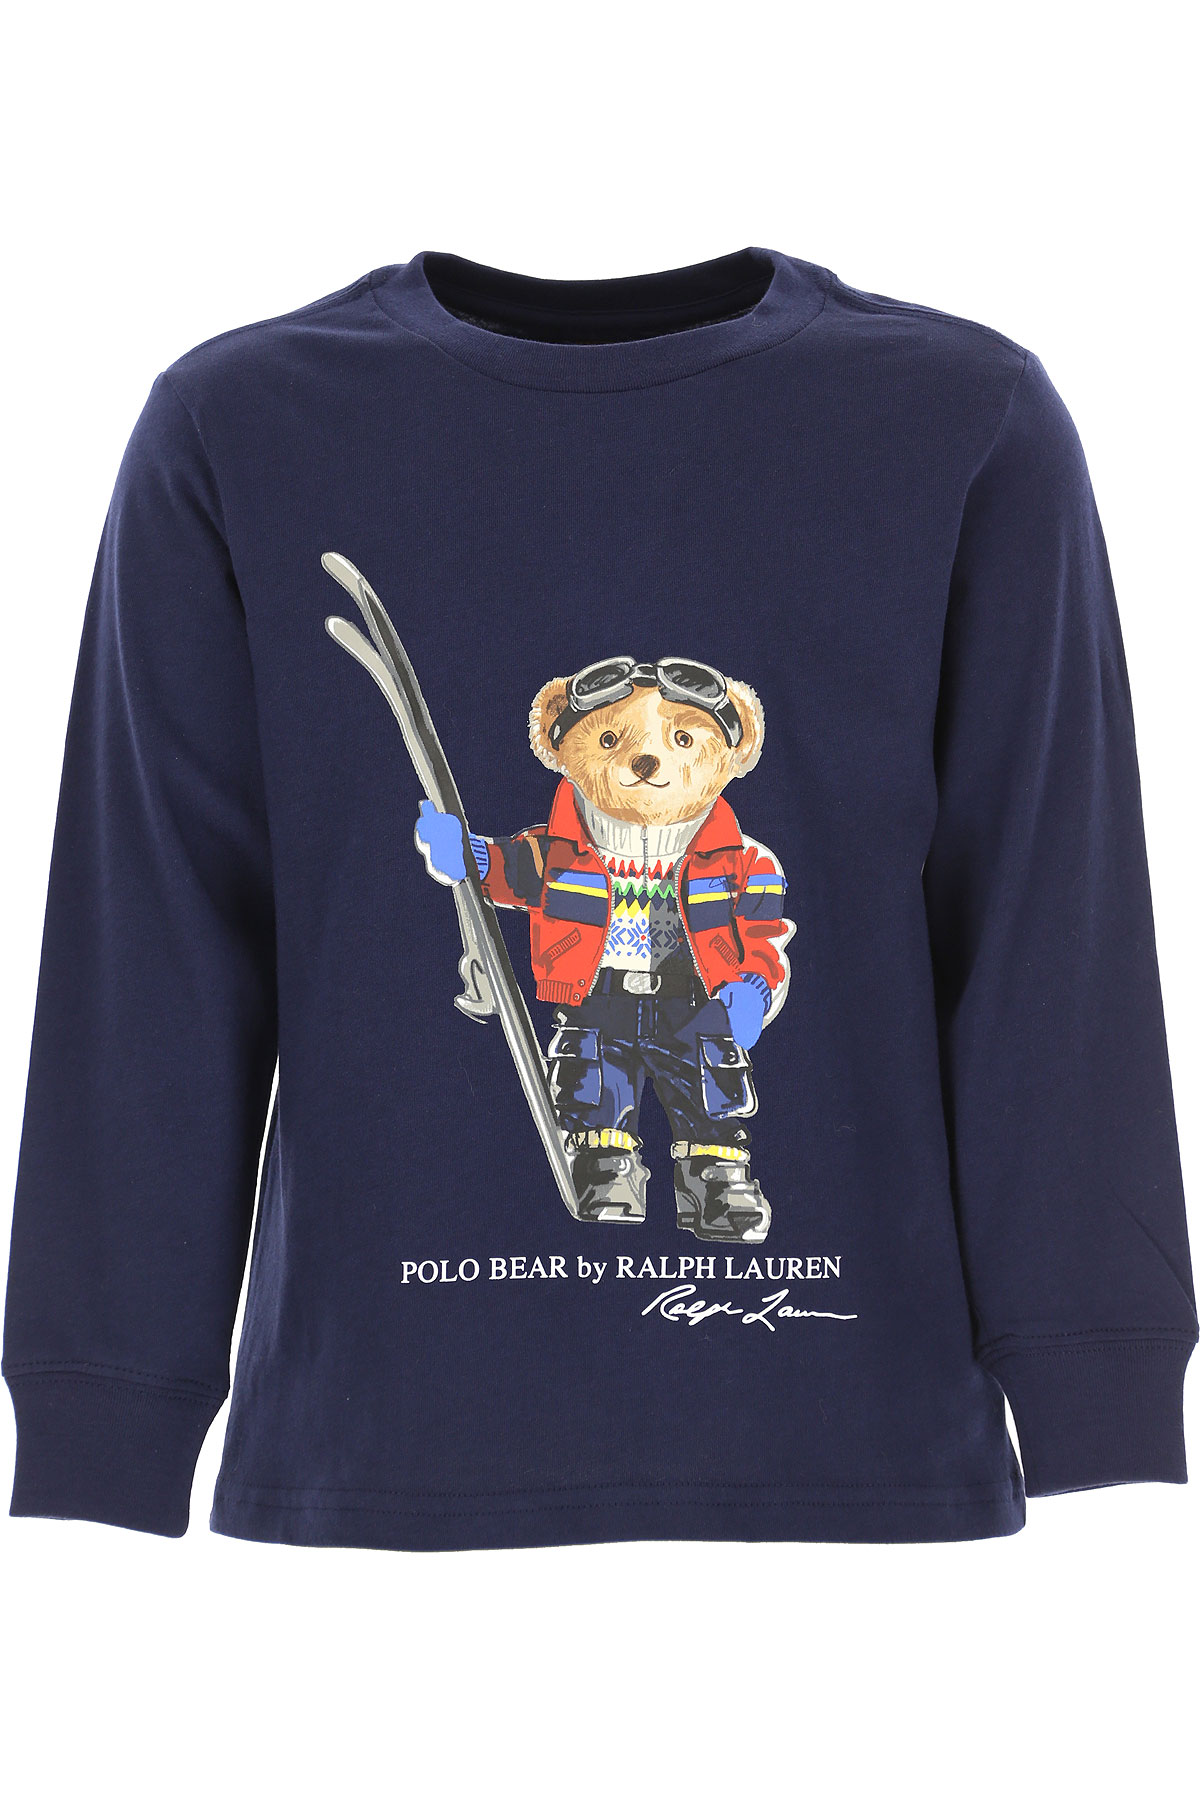 Ralph Lauren Kinder T-Shirt für Jungen Günstig im Sale, Marine blau, Baumwolle, 2017, 5Y 7Y